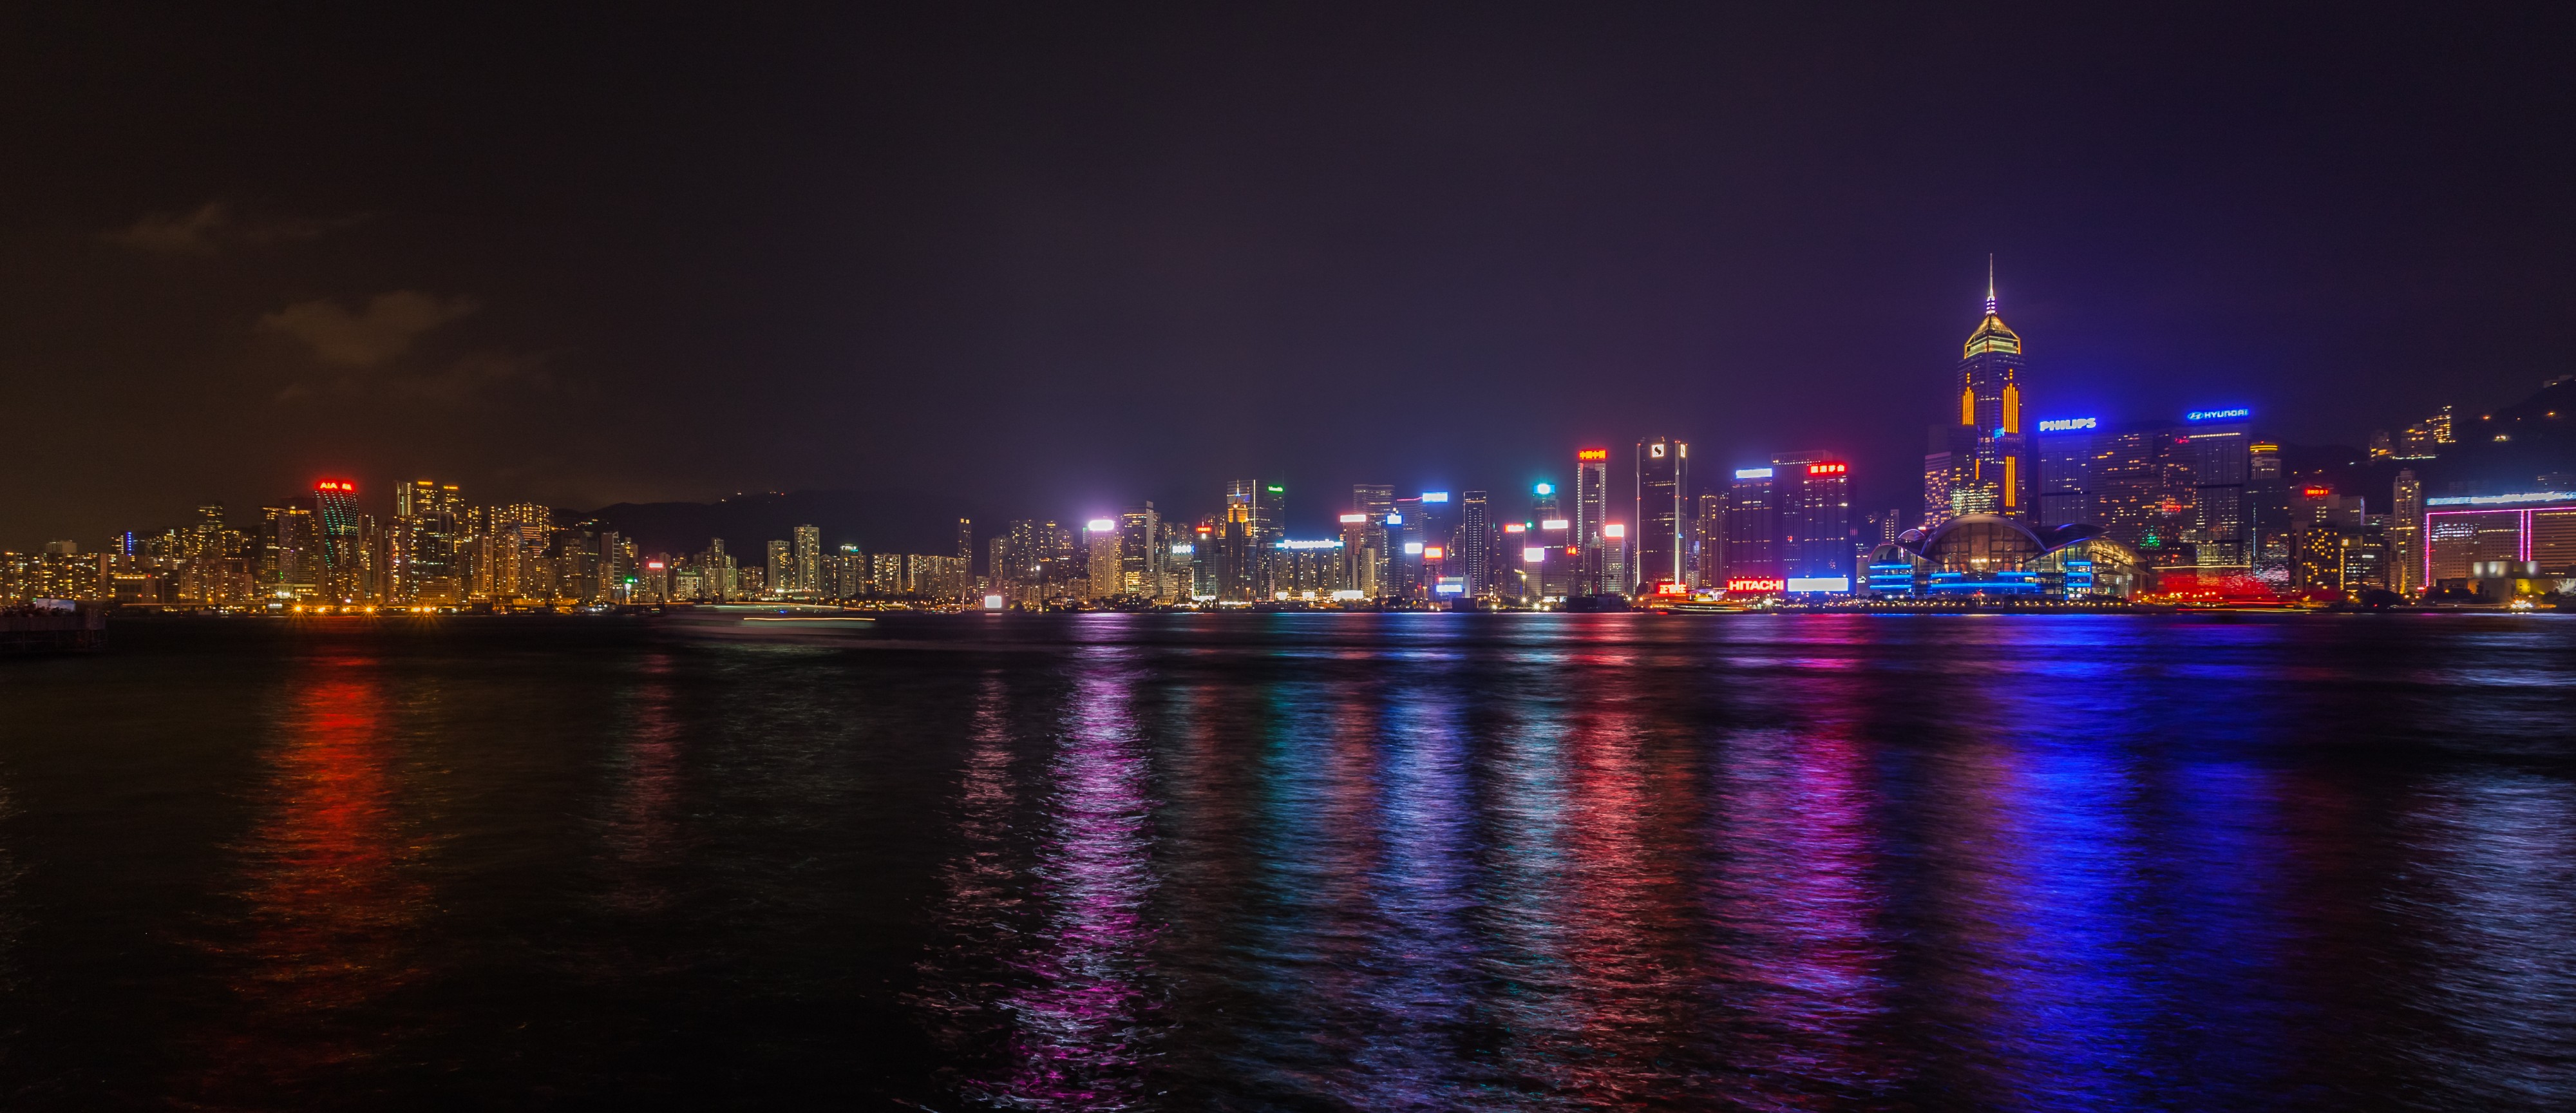 Vista del Puerto de Victoria desde Kowloon, Hong Kong, 2013-08-11, DD 11